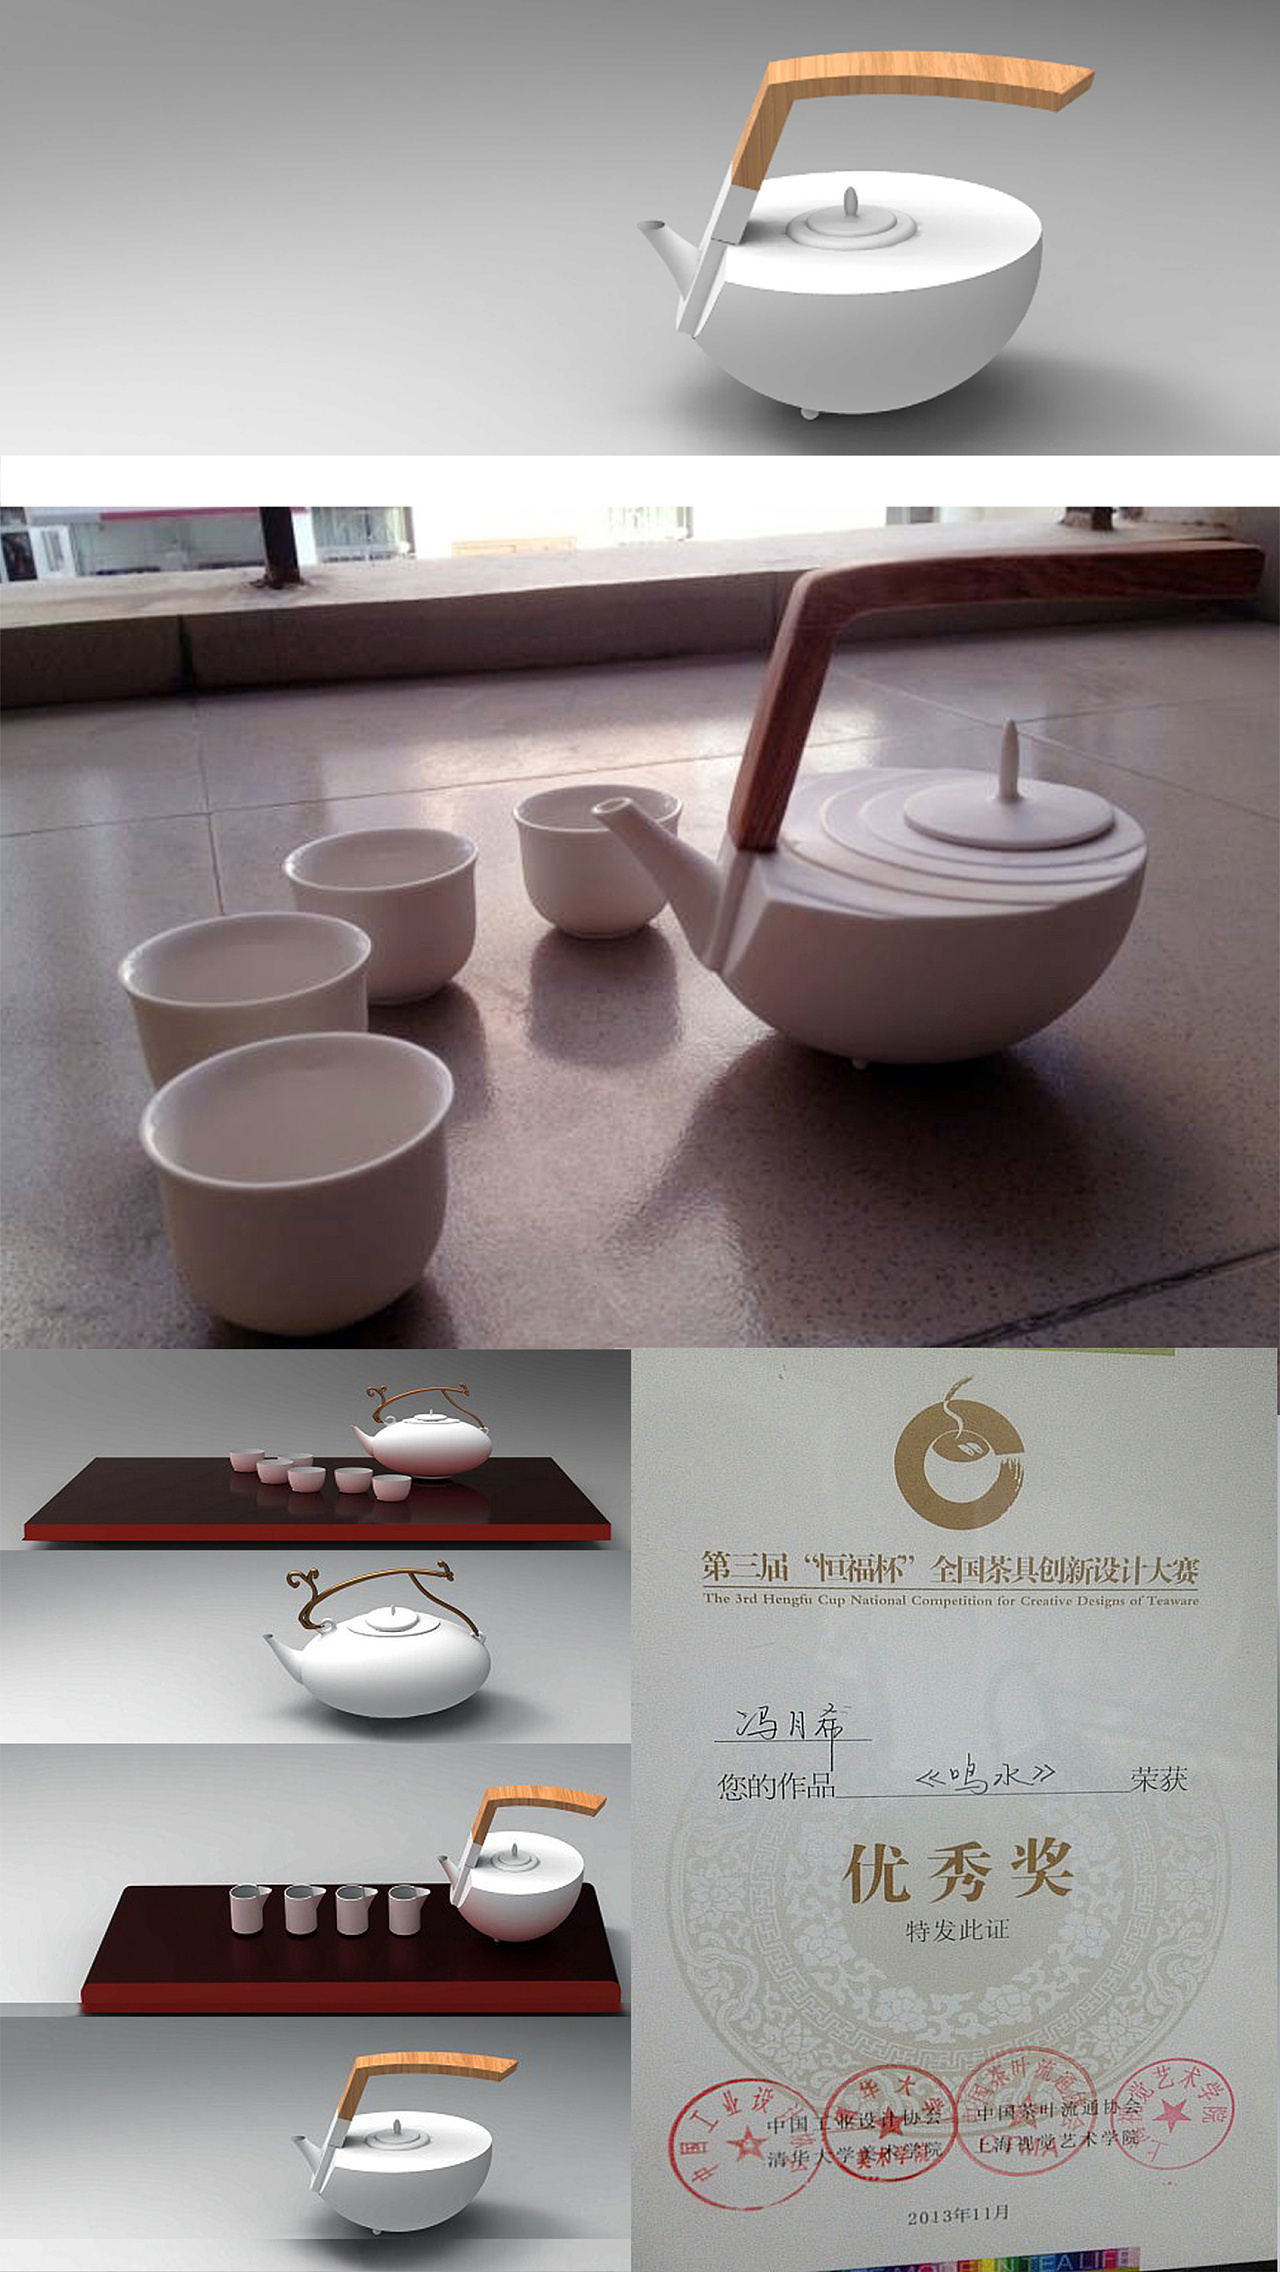 中国茶叶流通协会共同主办的第三届恒福杯茶具创新设计大赛